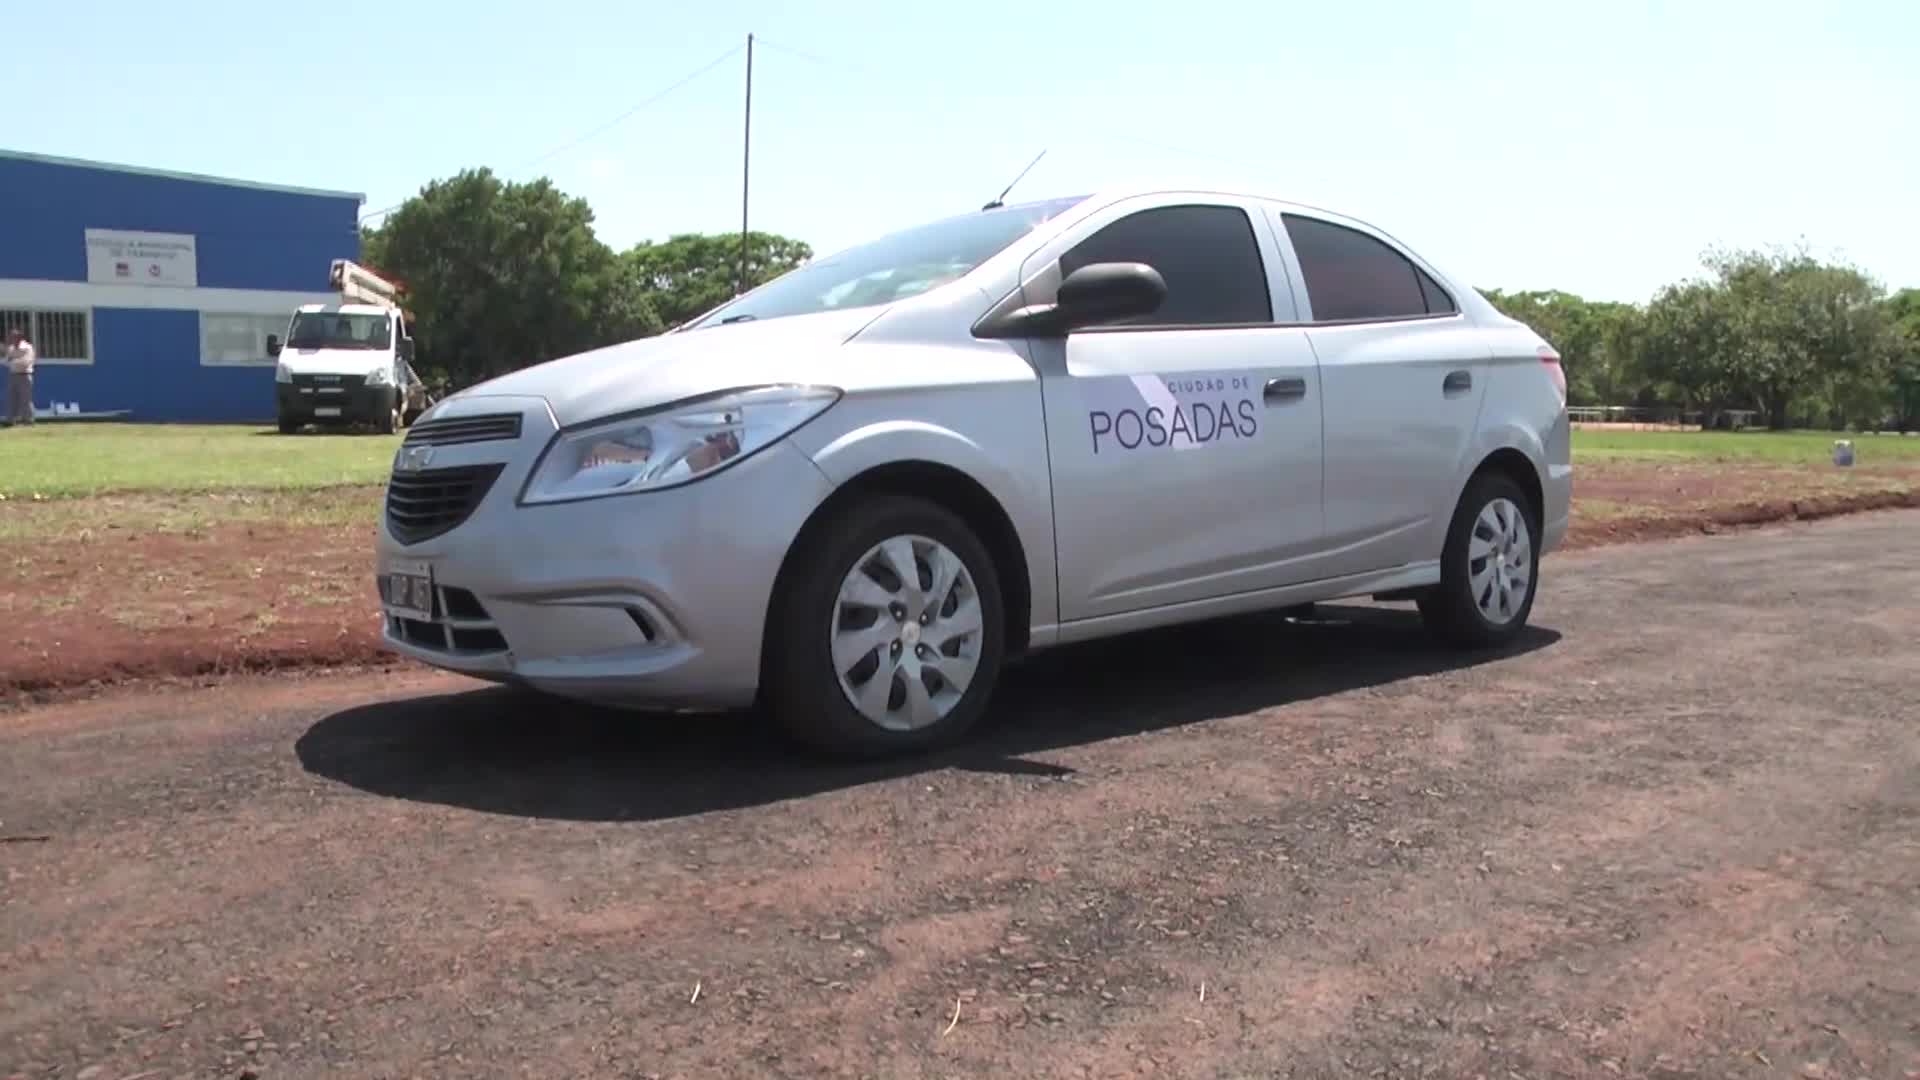 Municipalidad de Posadas: presentaron el auto doble comando de la Escuela de Manejo 